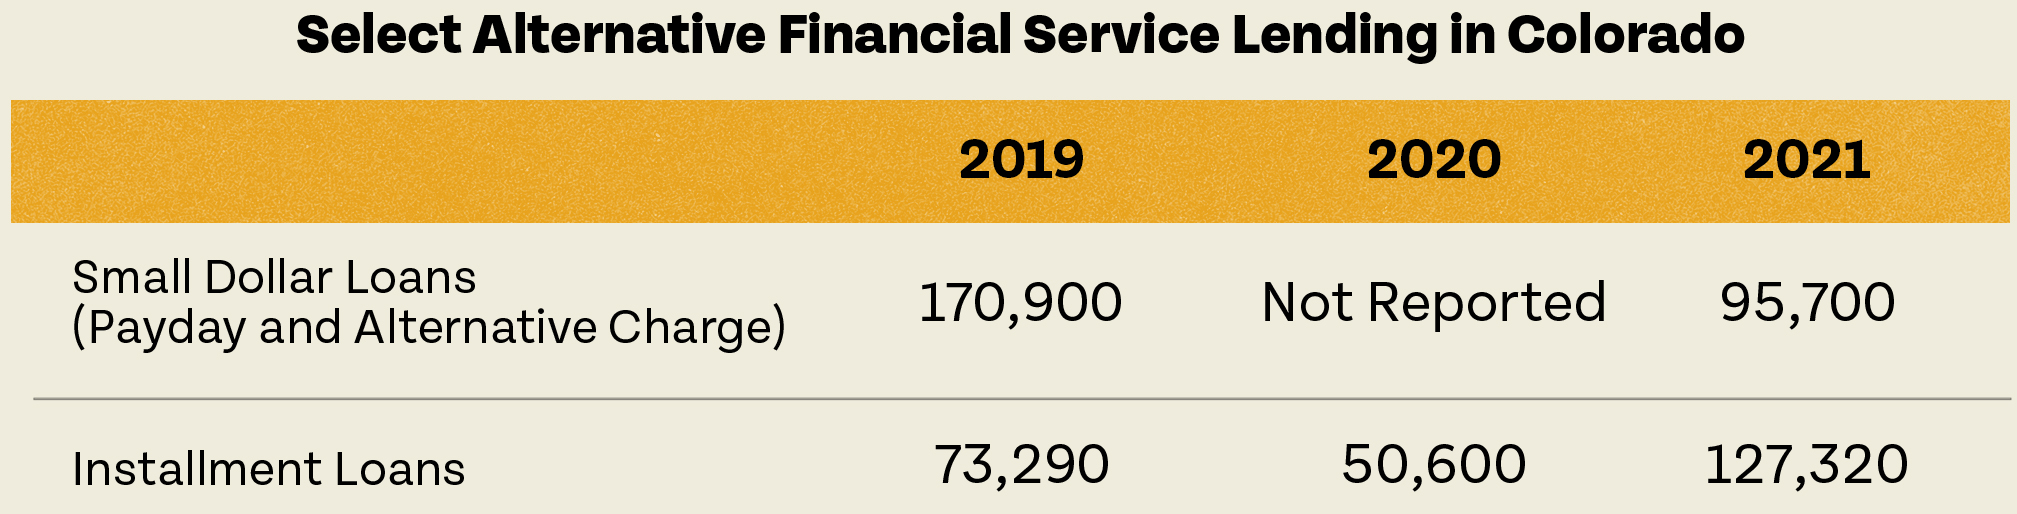 Select Alternative Financial Service Lending in Colorado